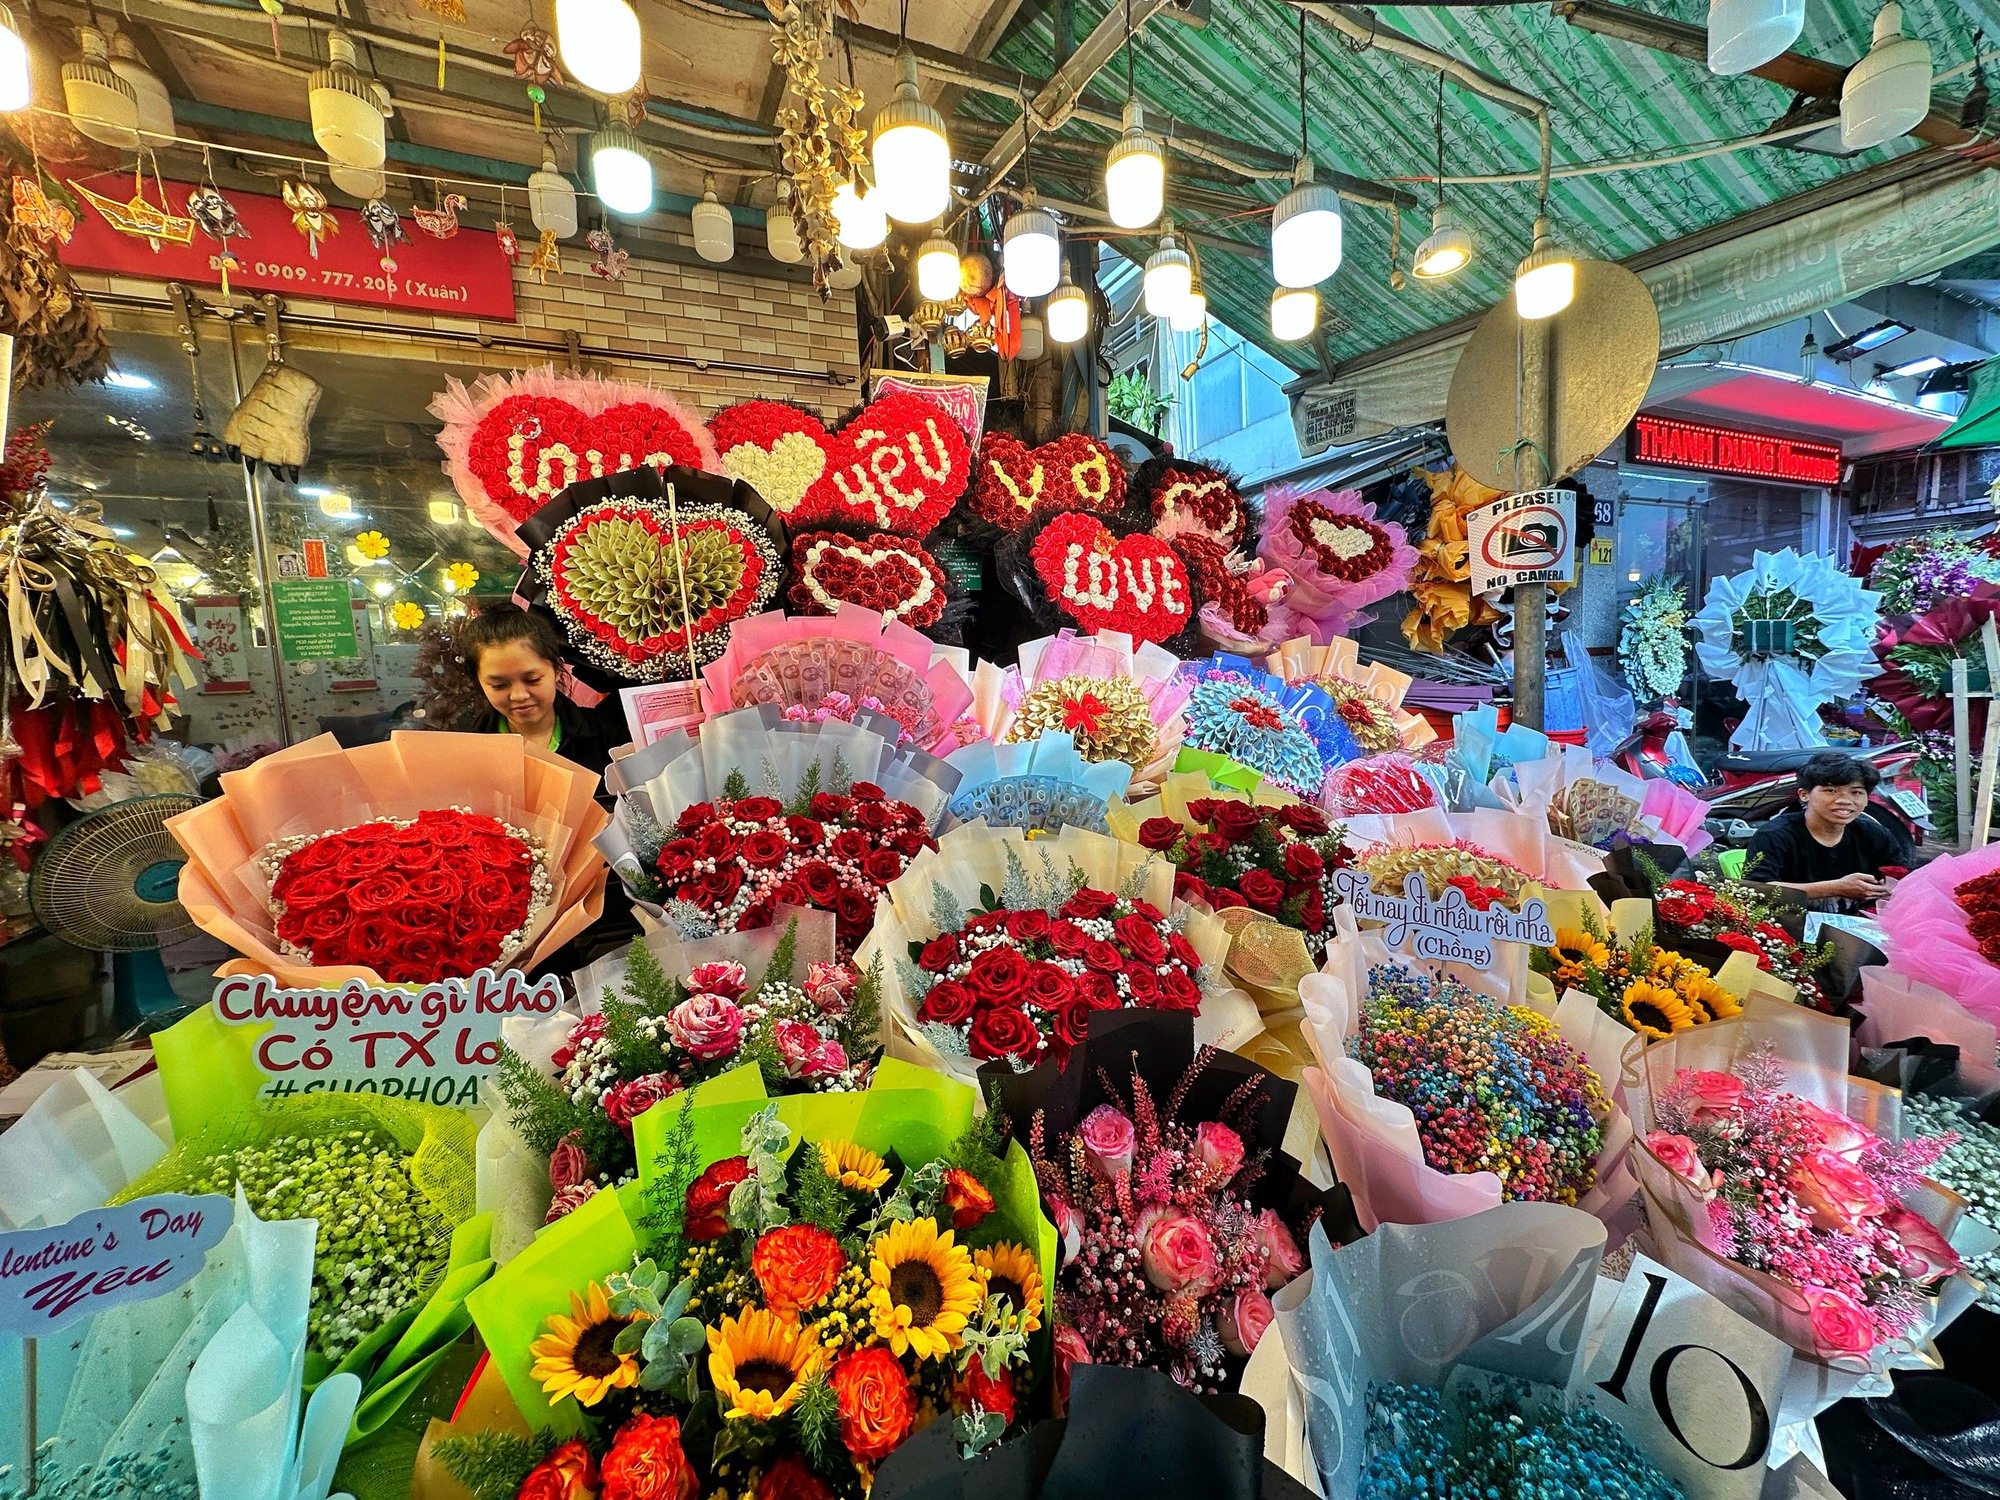 Ngày Valentine 14.2: Giá hoa hồng tăng, chủ shop TP.HCM thuê thêm nhân công bán liên tục - Ảnh 10.